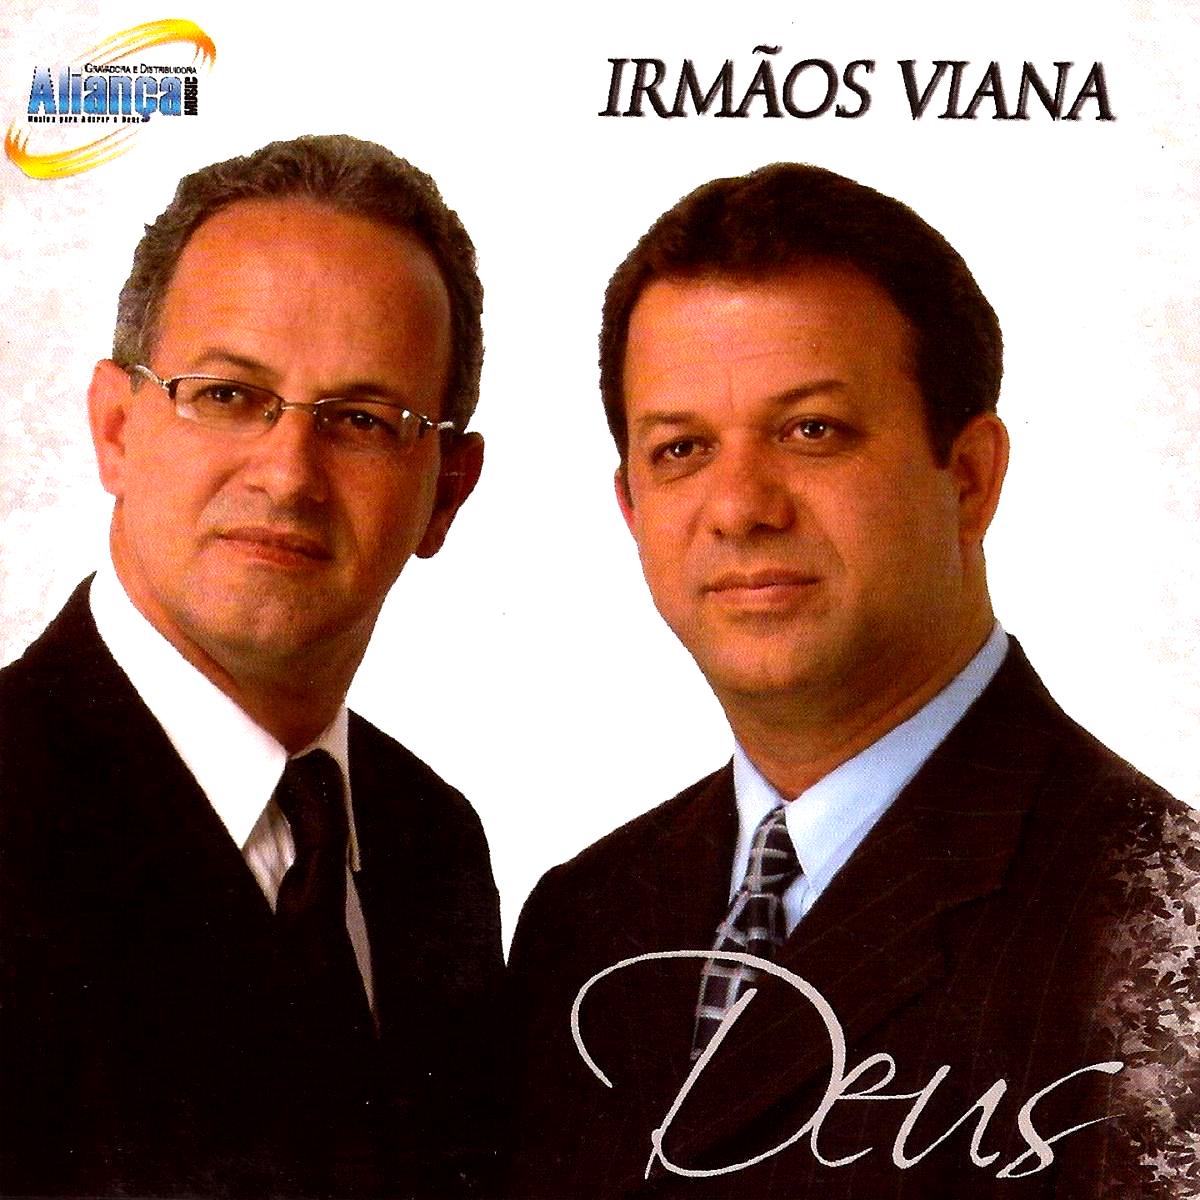 Irmãos Viana